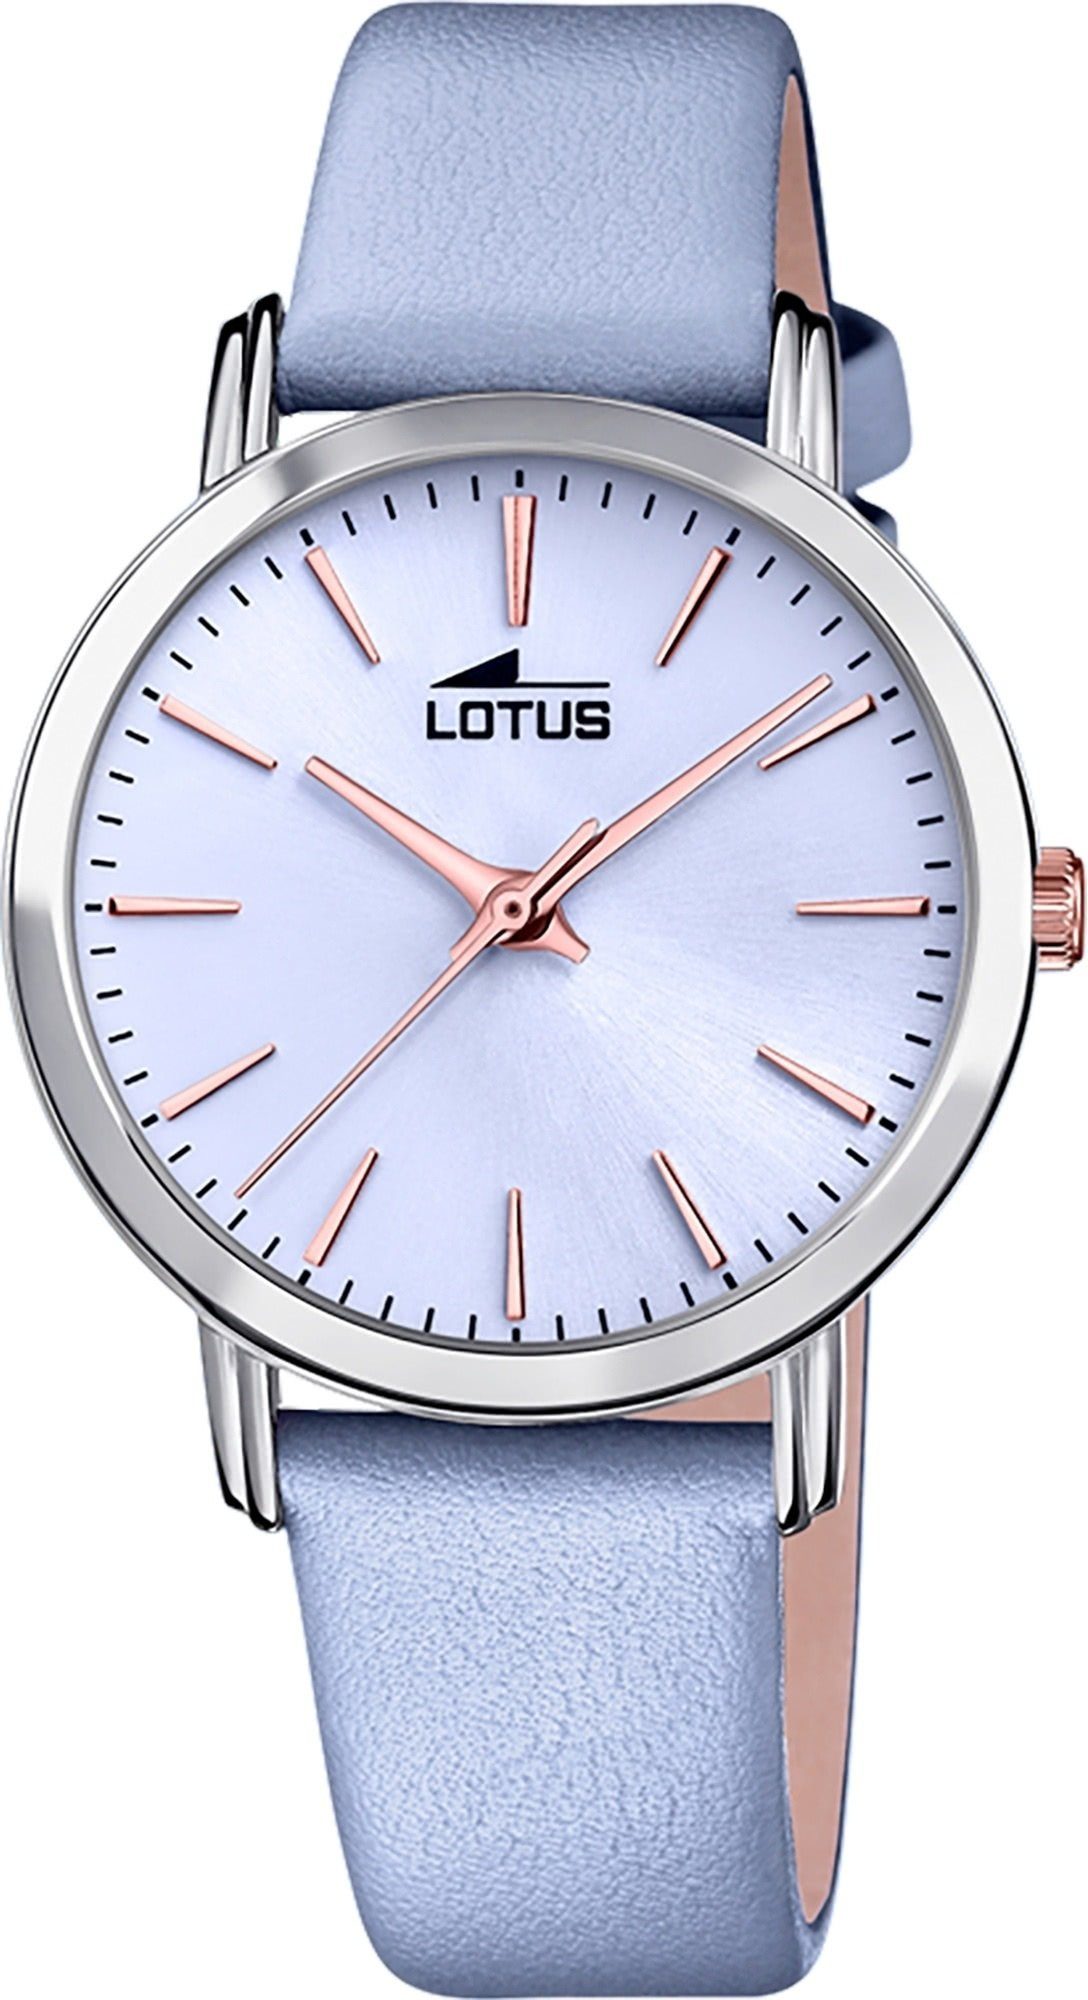 Lotus Quarzuhr Lotus Damen Armbanduhr Trendy 18738/3, Damenuhr rund, mittel (ca. 33mm) Lederarmband blau